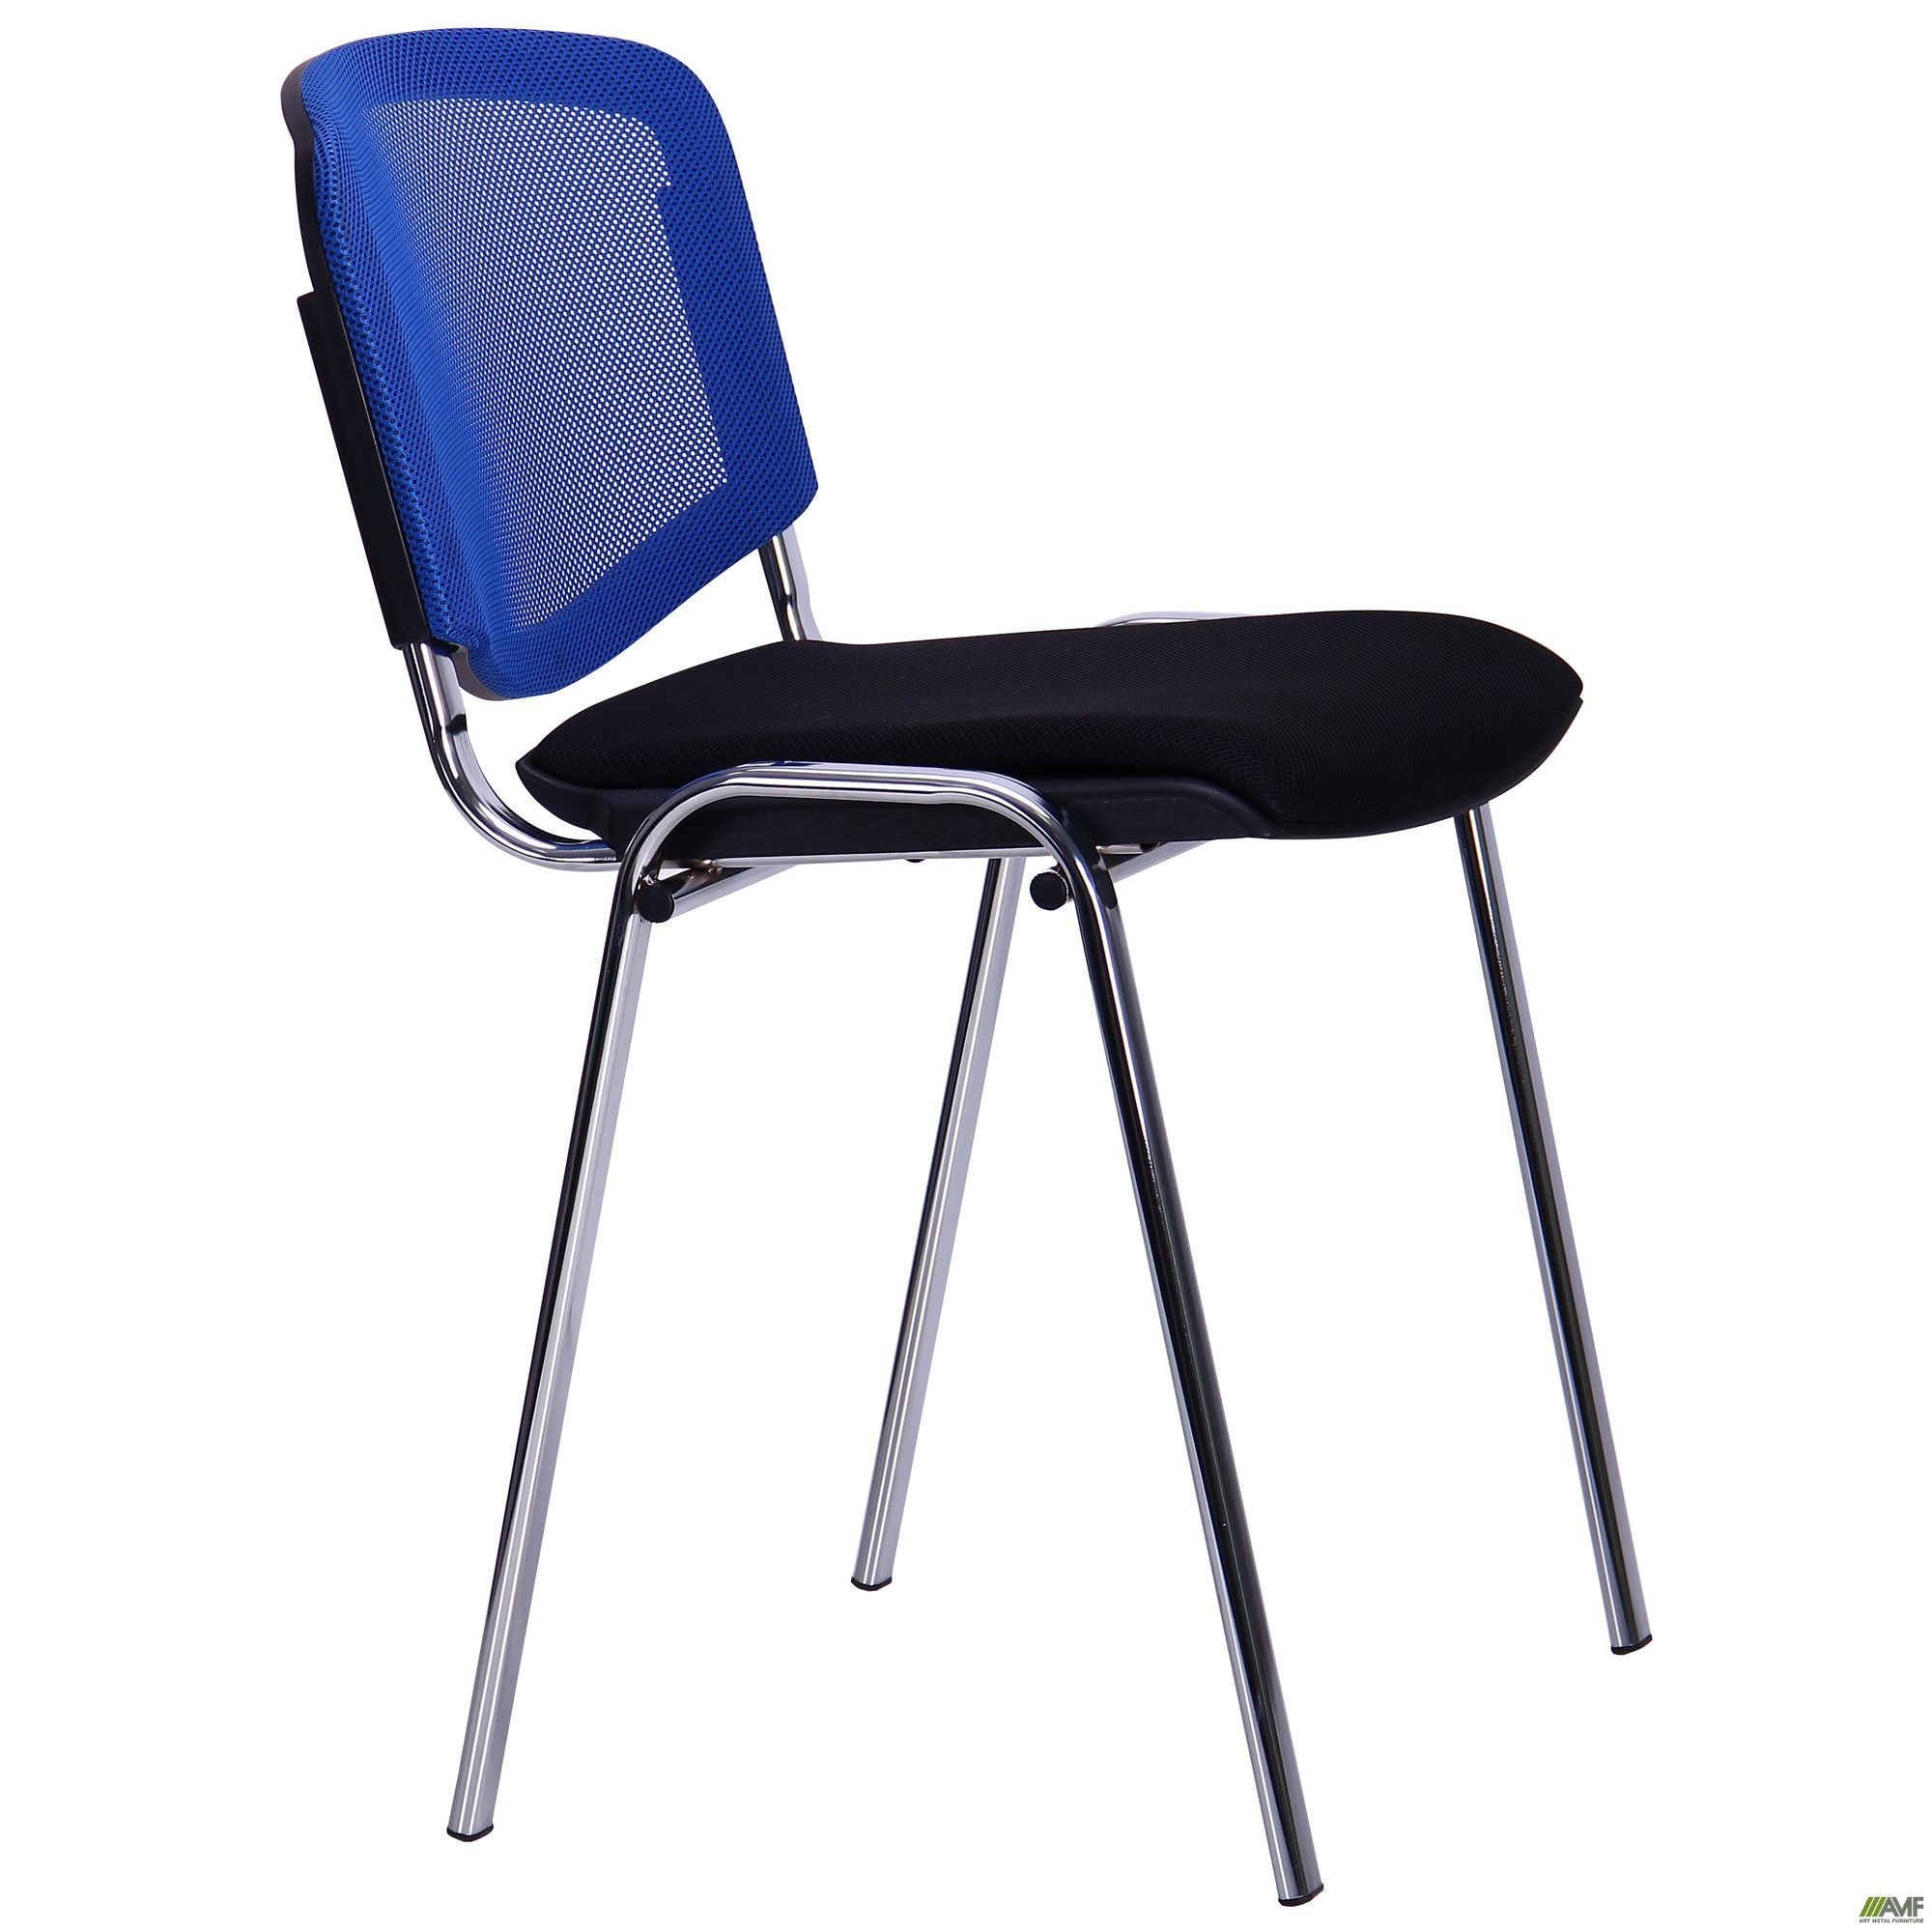 Фото 2 - Стул Призма Веб хром сиденье Сетка черная/спинка Сетка синяя 